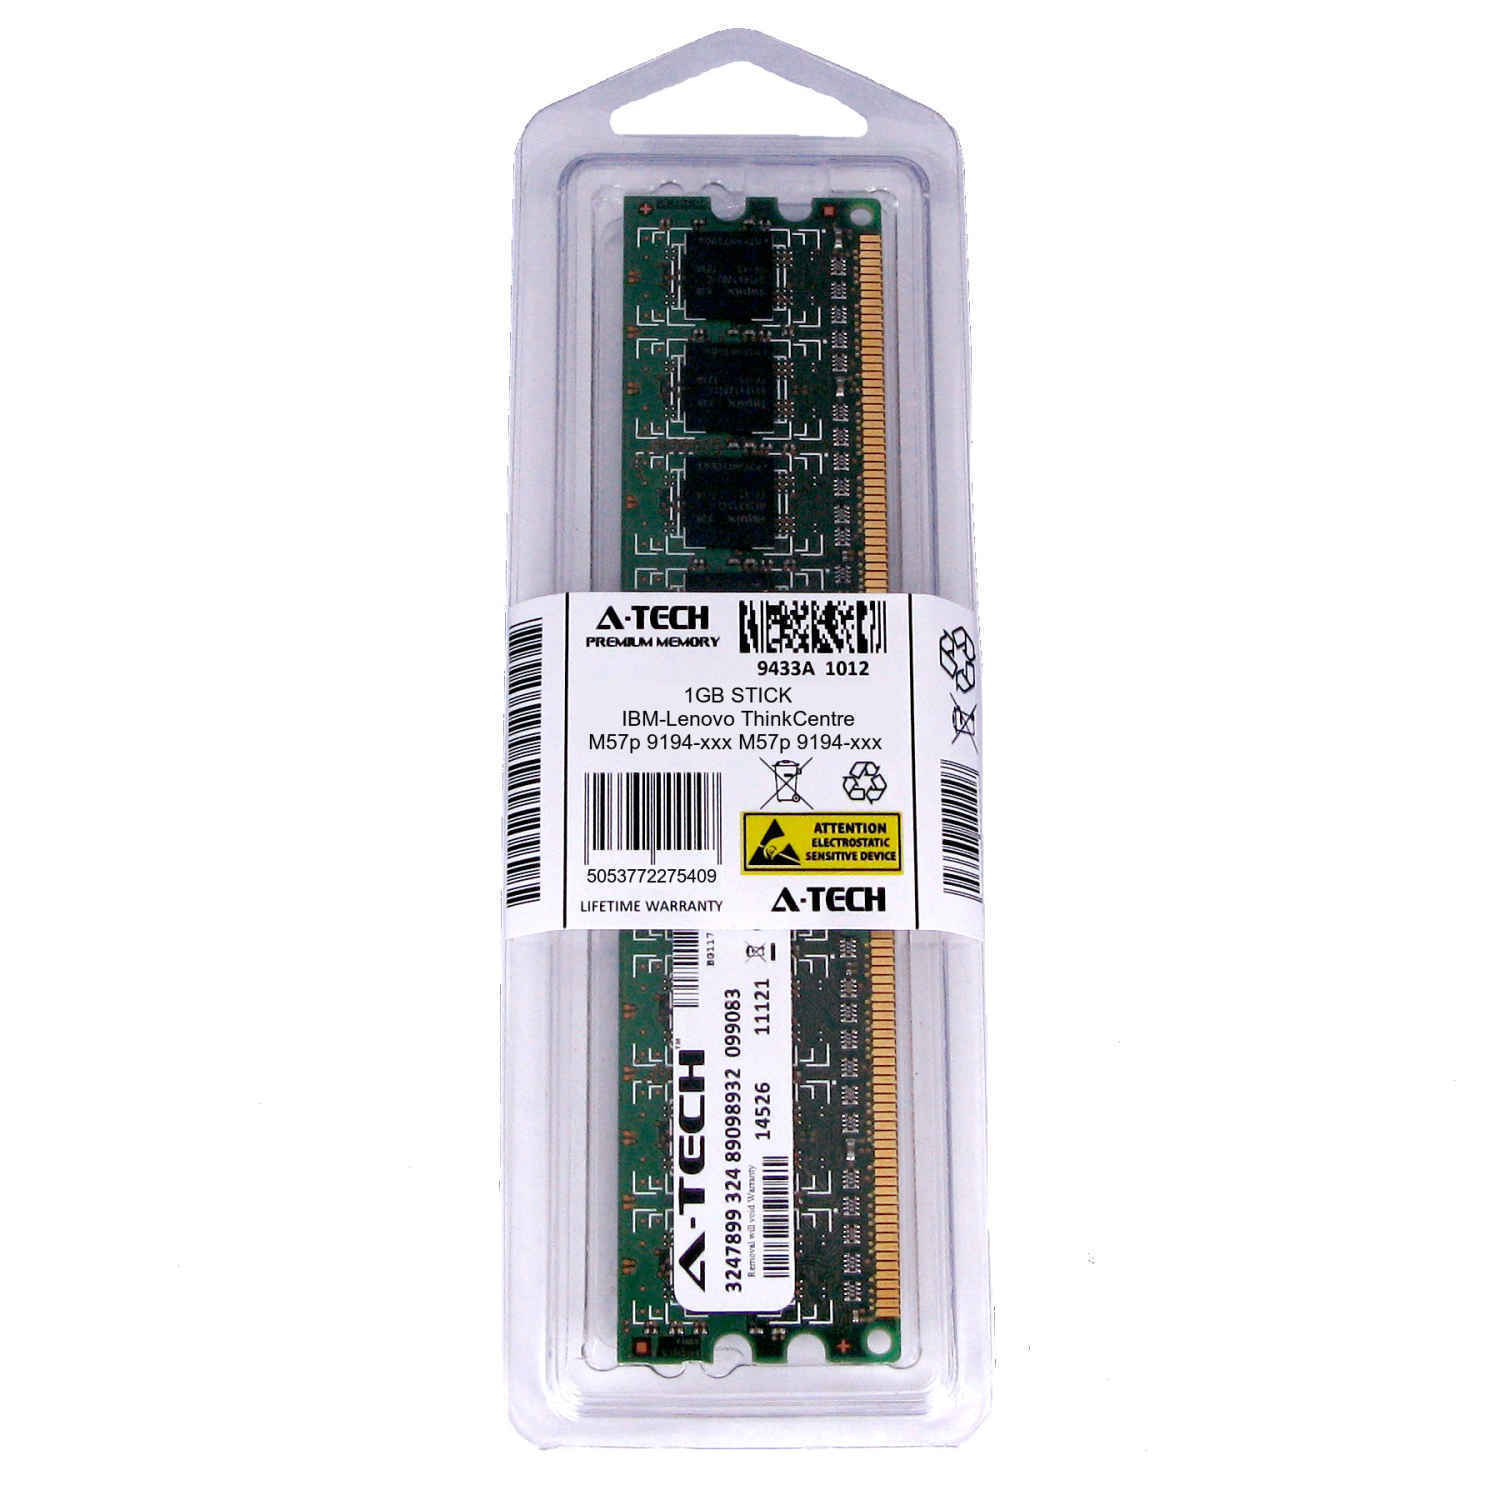 1GB DIMM IBM-Lenovo ThinkCentre M57p 9194-xxx 9196-xxx 9967-xxx Ram Memory